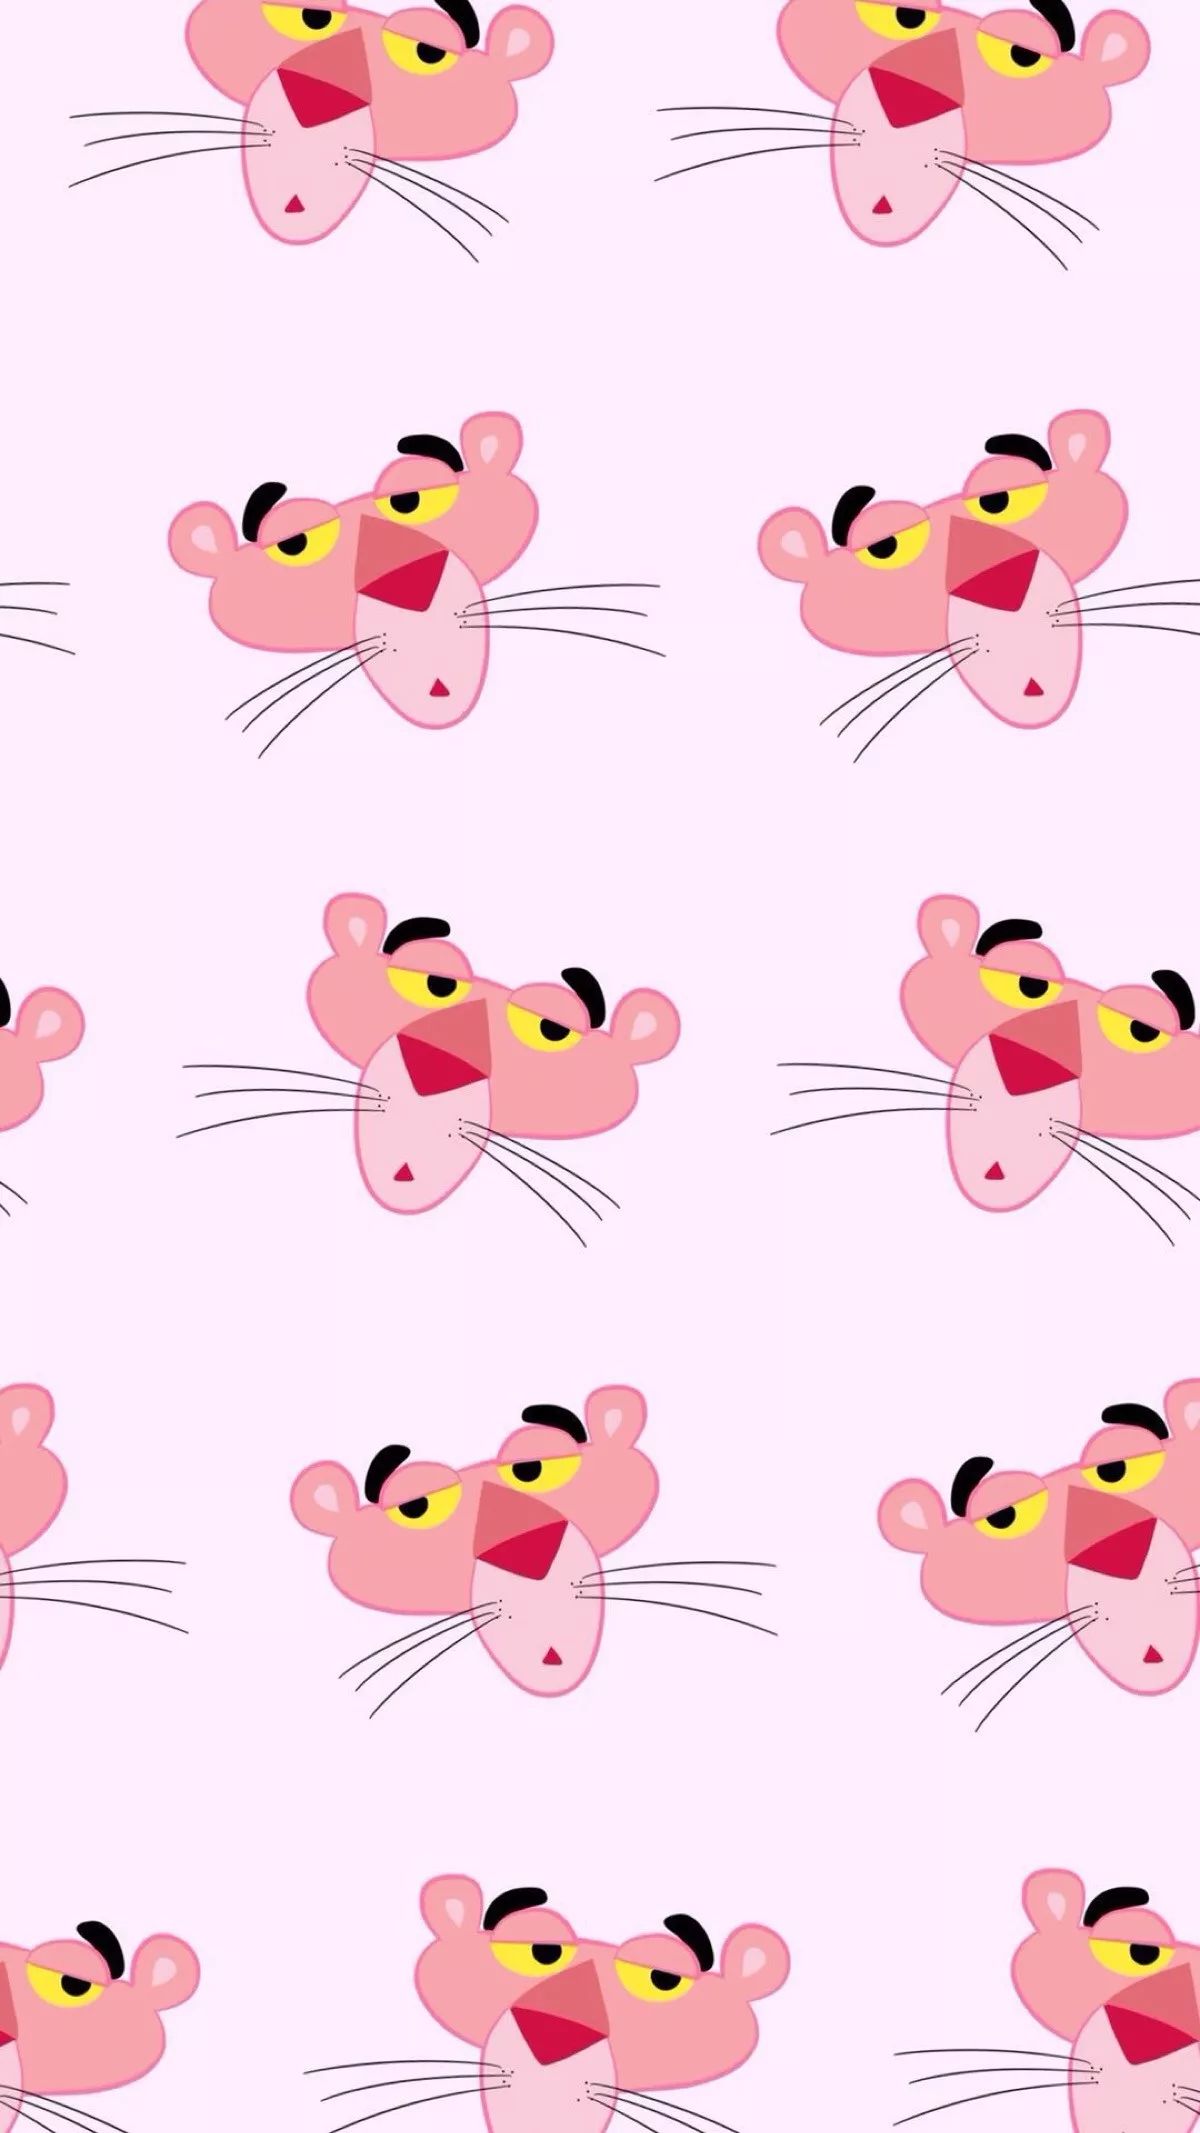 Pink Panther Cartoon Wallpapers - Top Free Pink Panther Cartoon ...